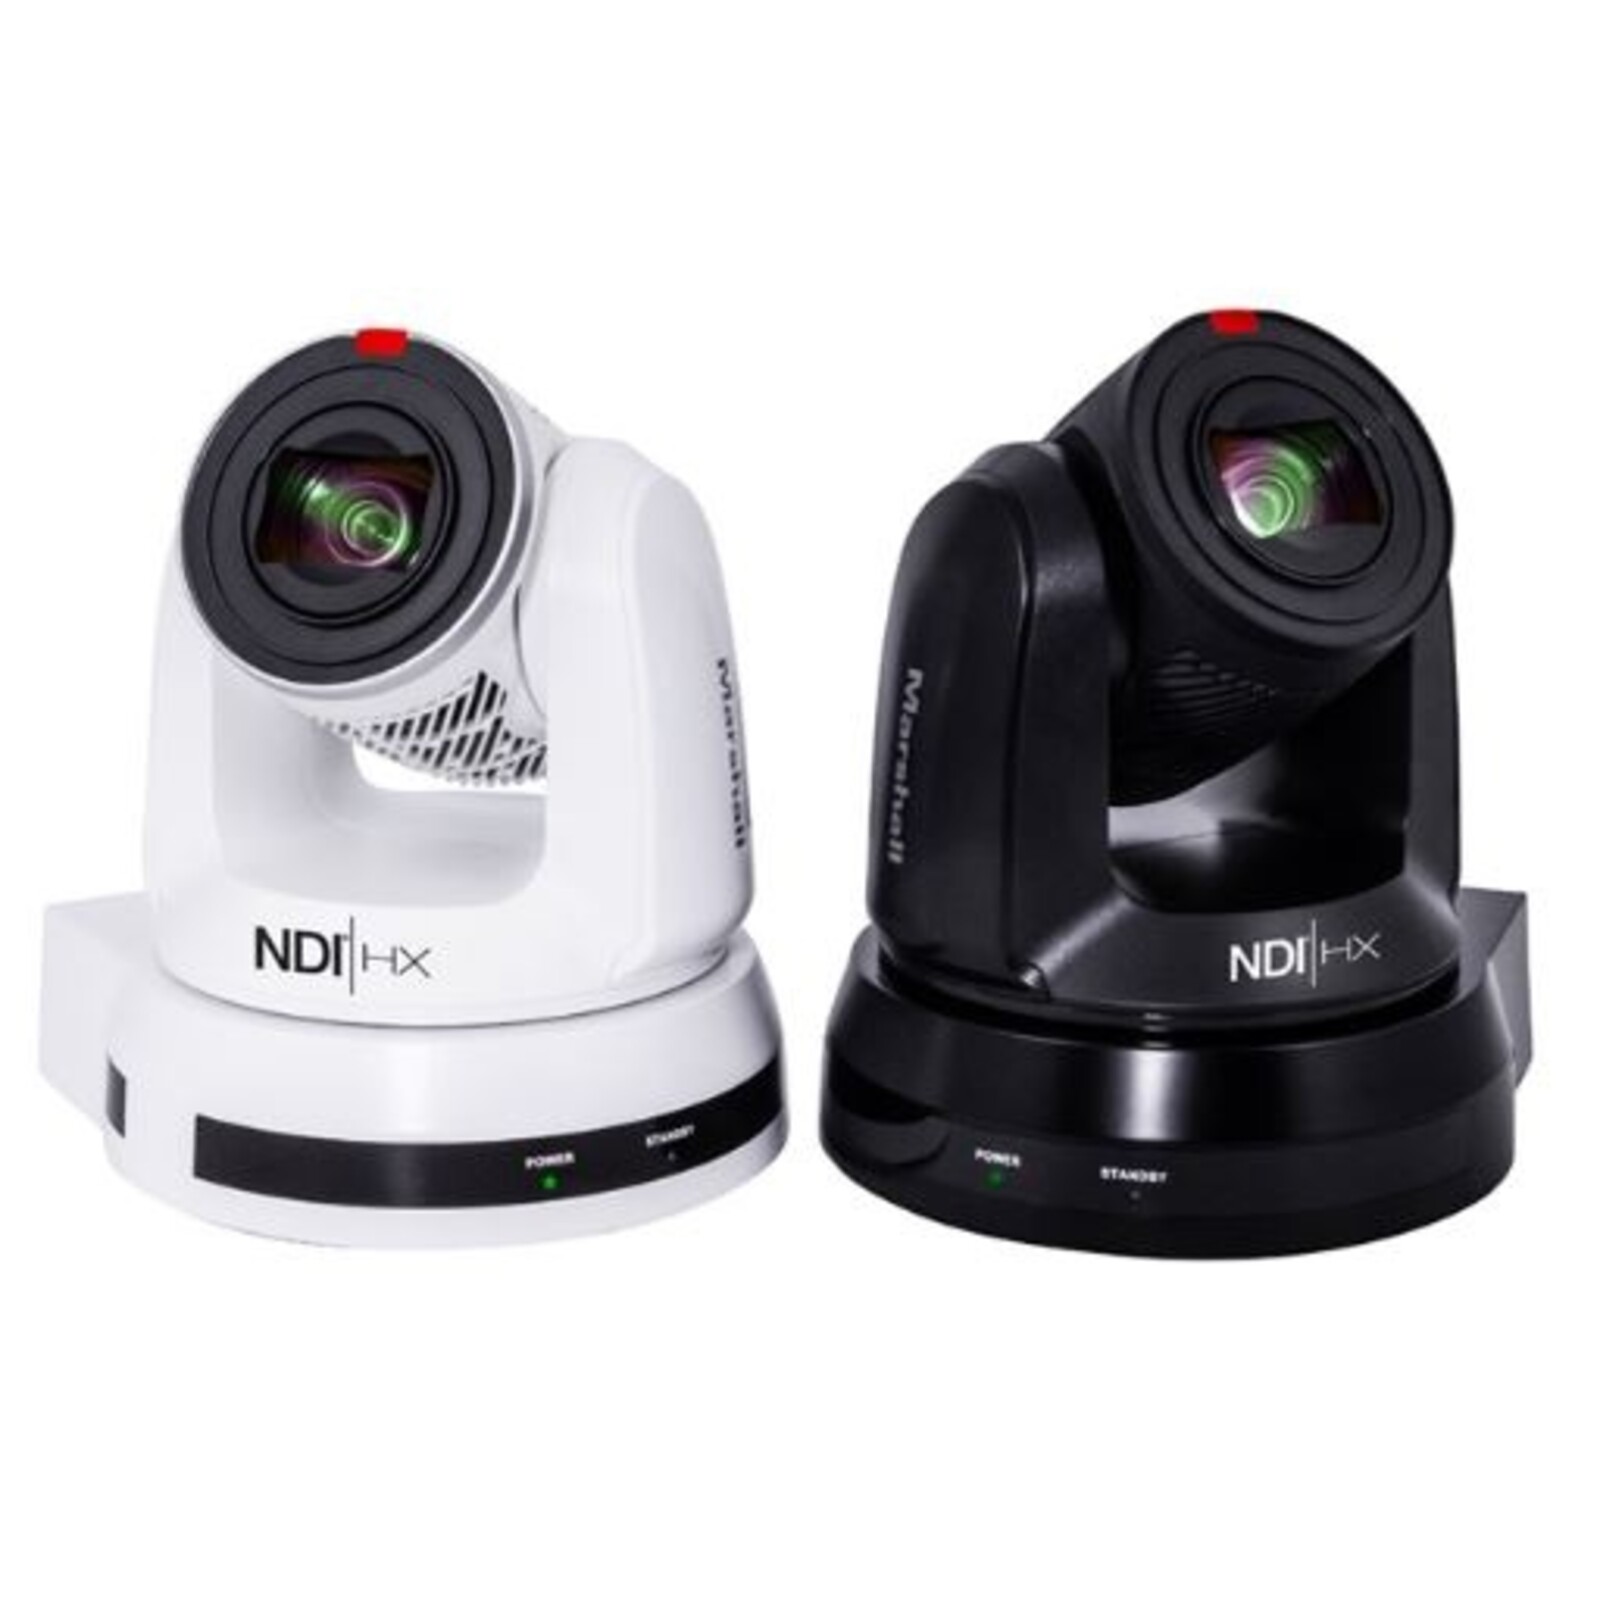 Marshall 4K (UHD30) NDI PTZ Camera with 4.8mm-120mm 25x Zoom Lens – 3G-SDI, HDMI & NDI|HX3 Outputs